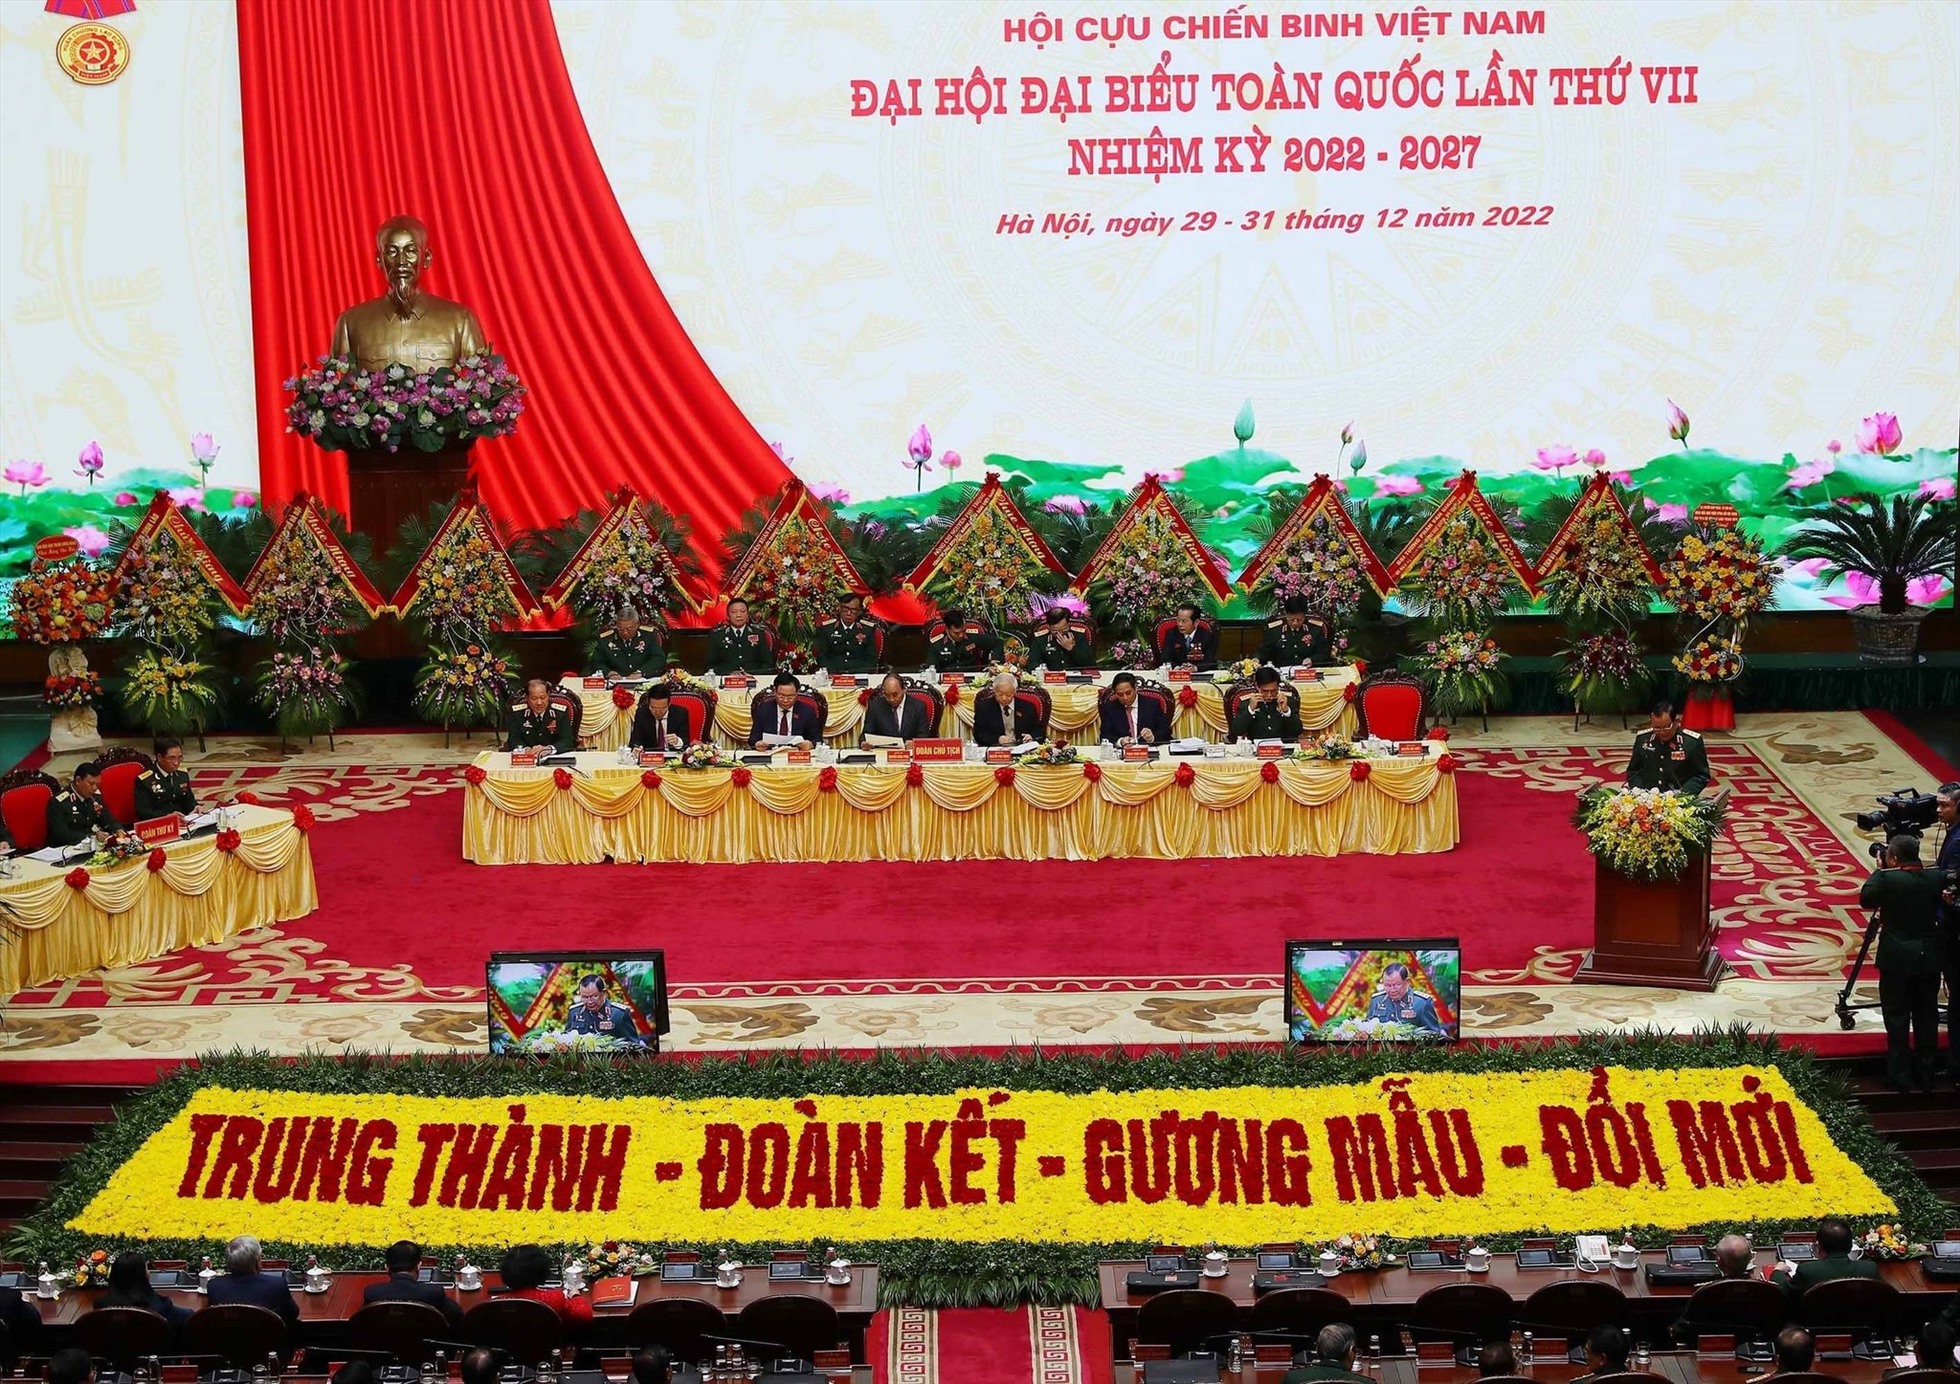 Đại hội Hội Cựu chiến binh Việt Nam lần thứ VII khai mạc sáng 30.12 tại Hà Nội. Ảnh: Trí Dũng